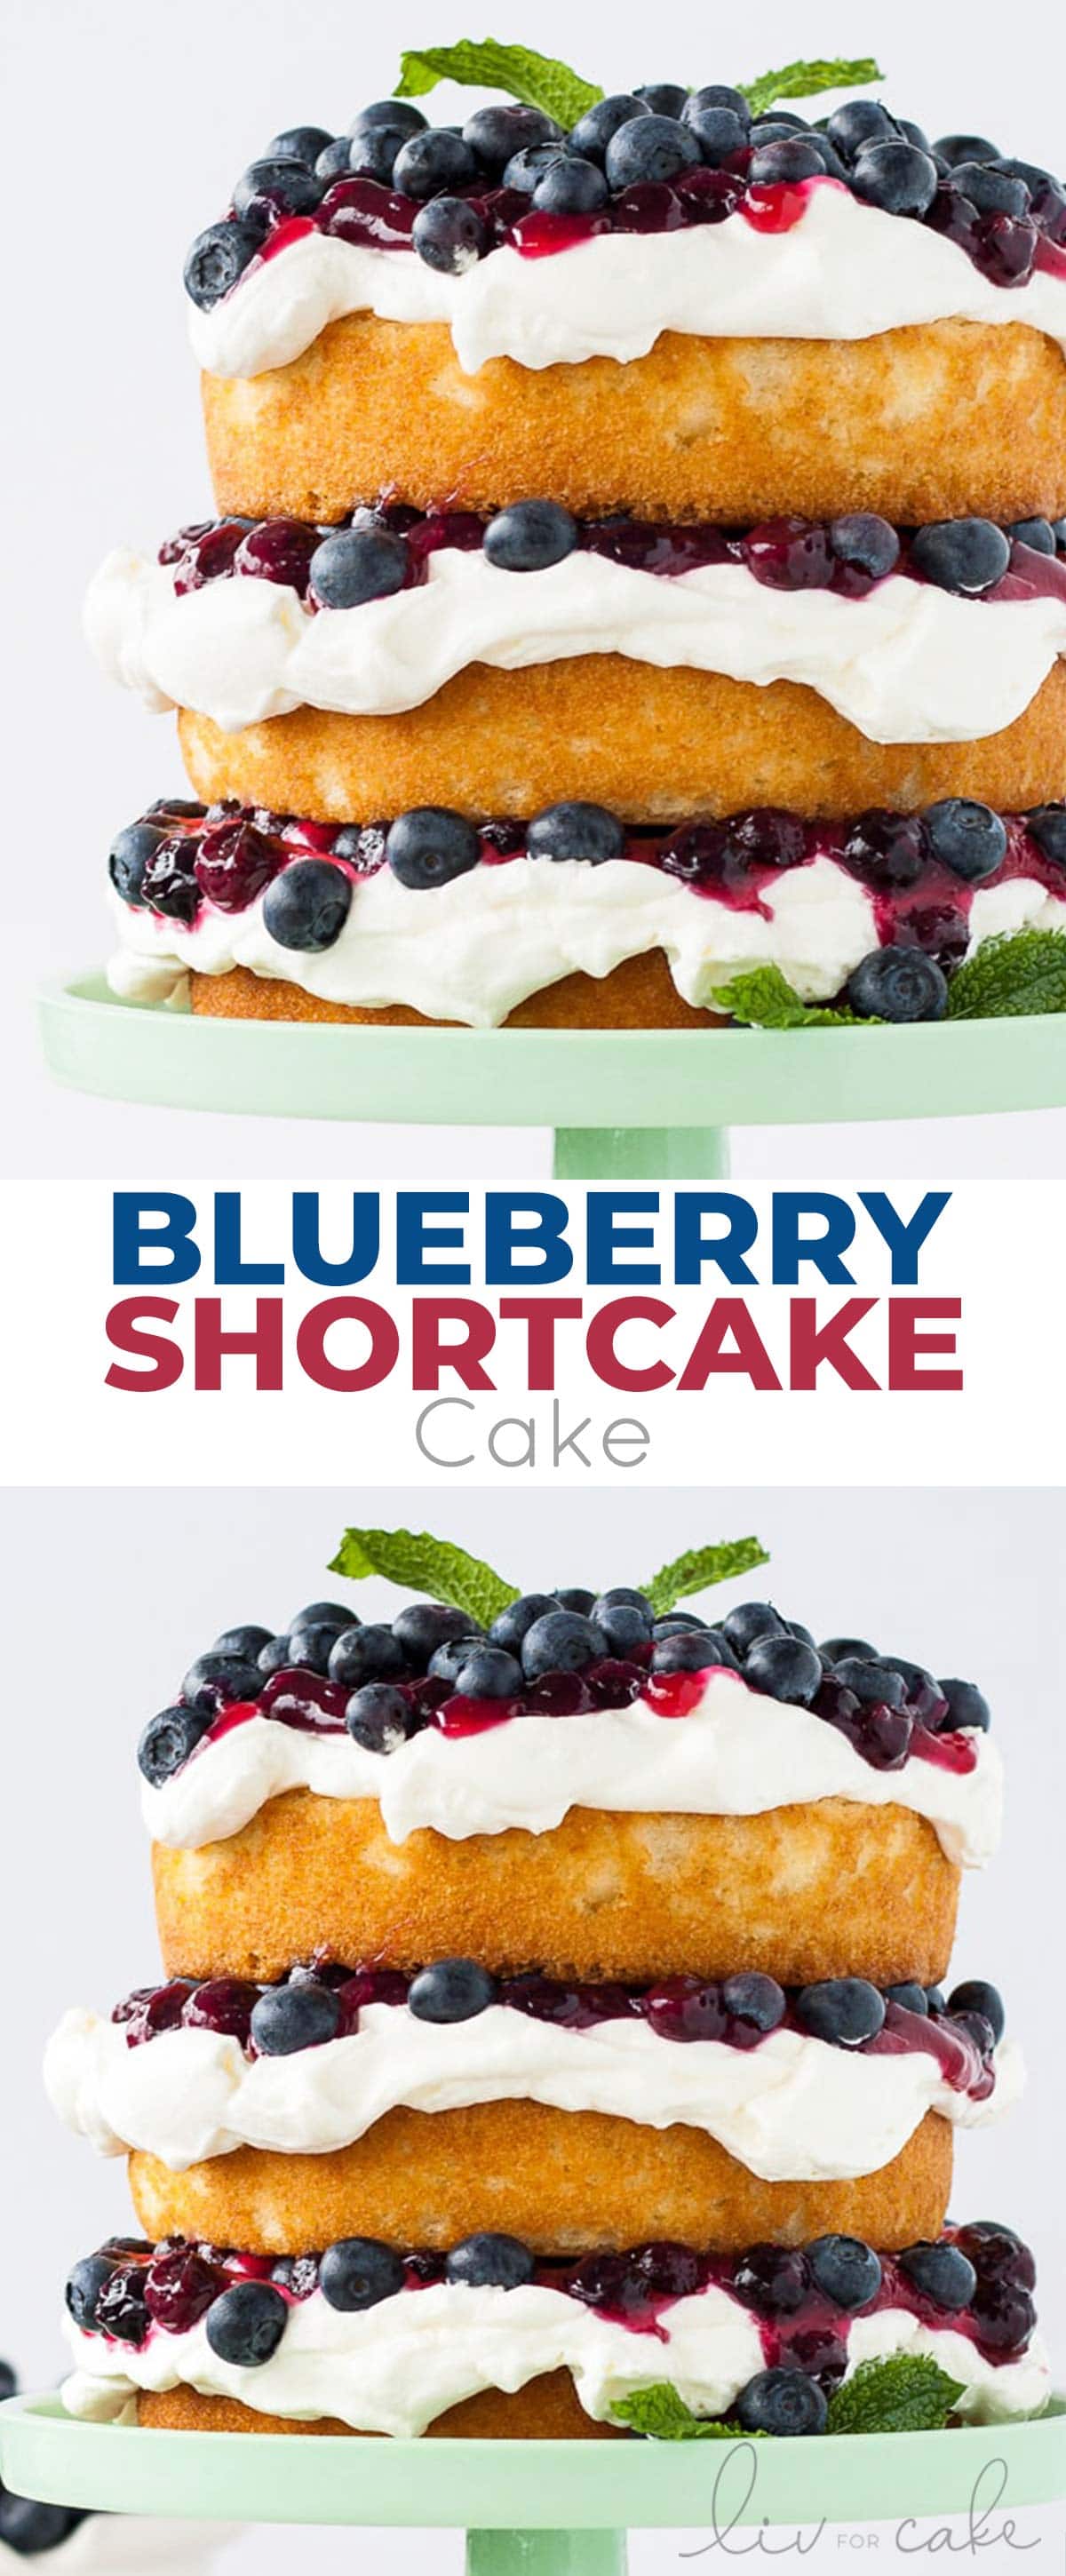 Blueberry Shortcake Cake photo collage.